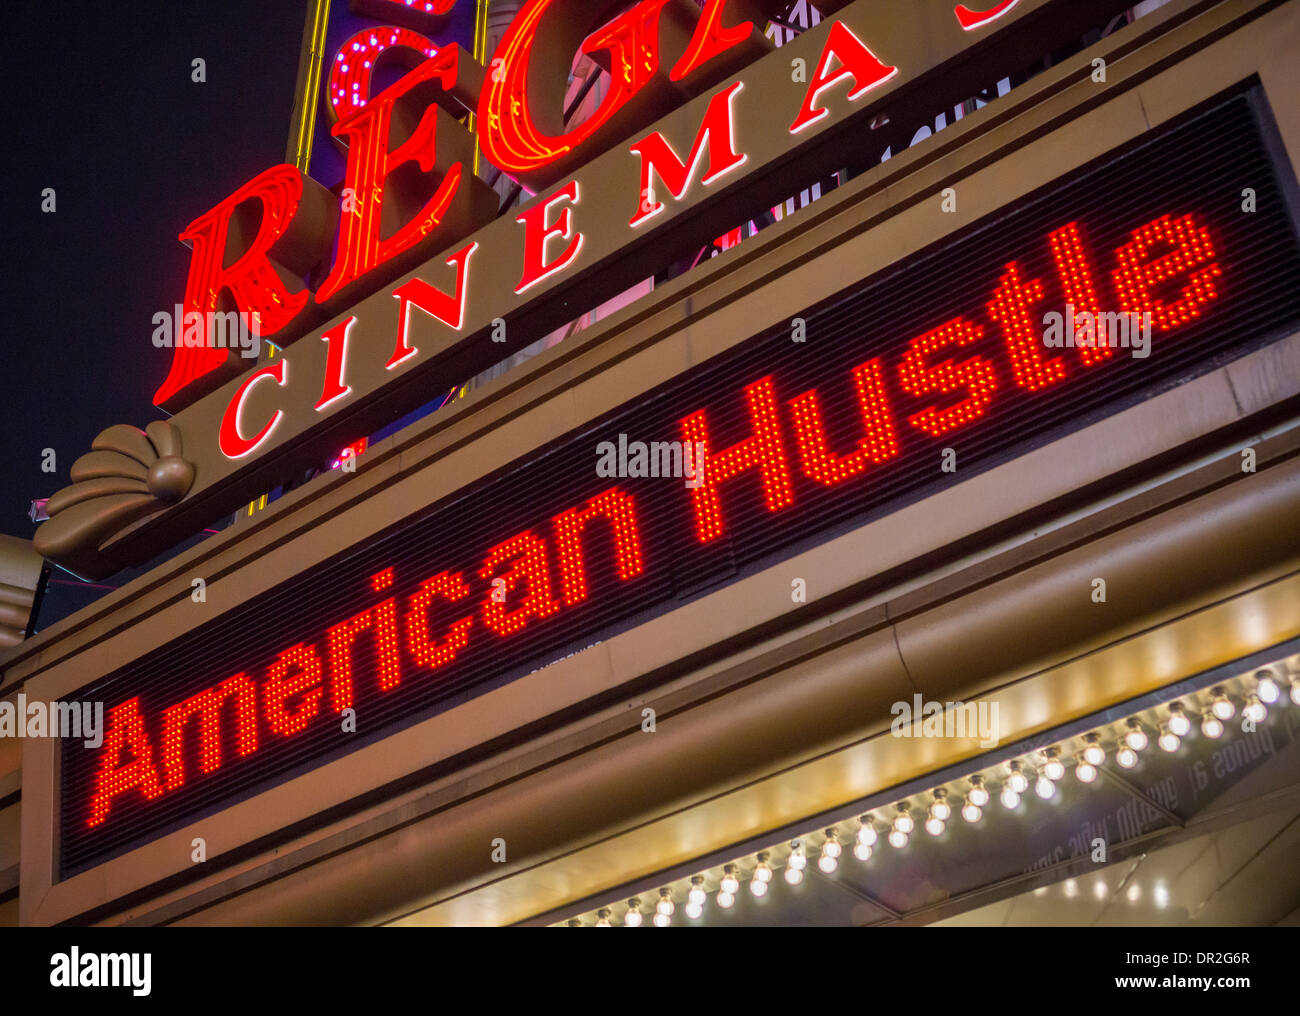 Meilleure photo Academy Award nommé American Hustle est montrant au Regal Cinemas à Times Square à New York Banque D'Images